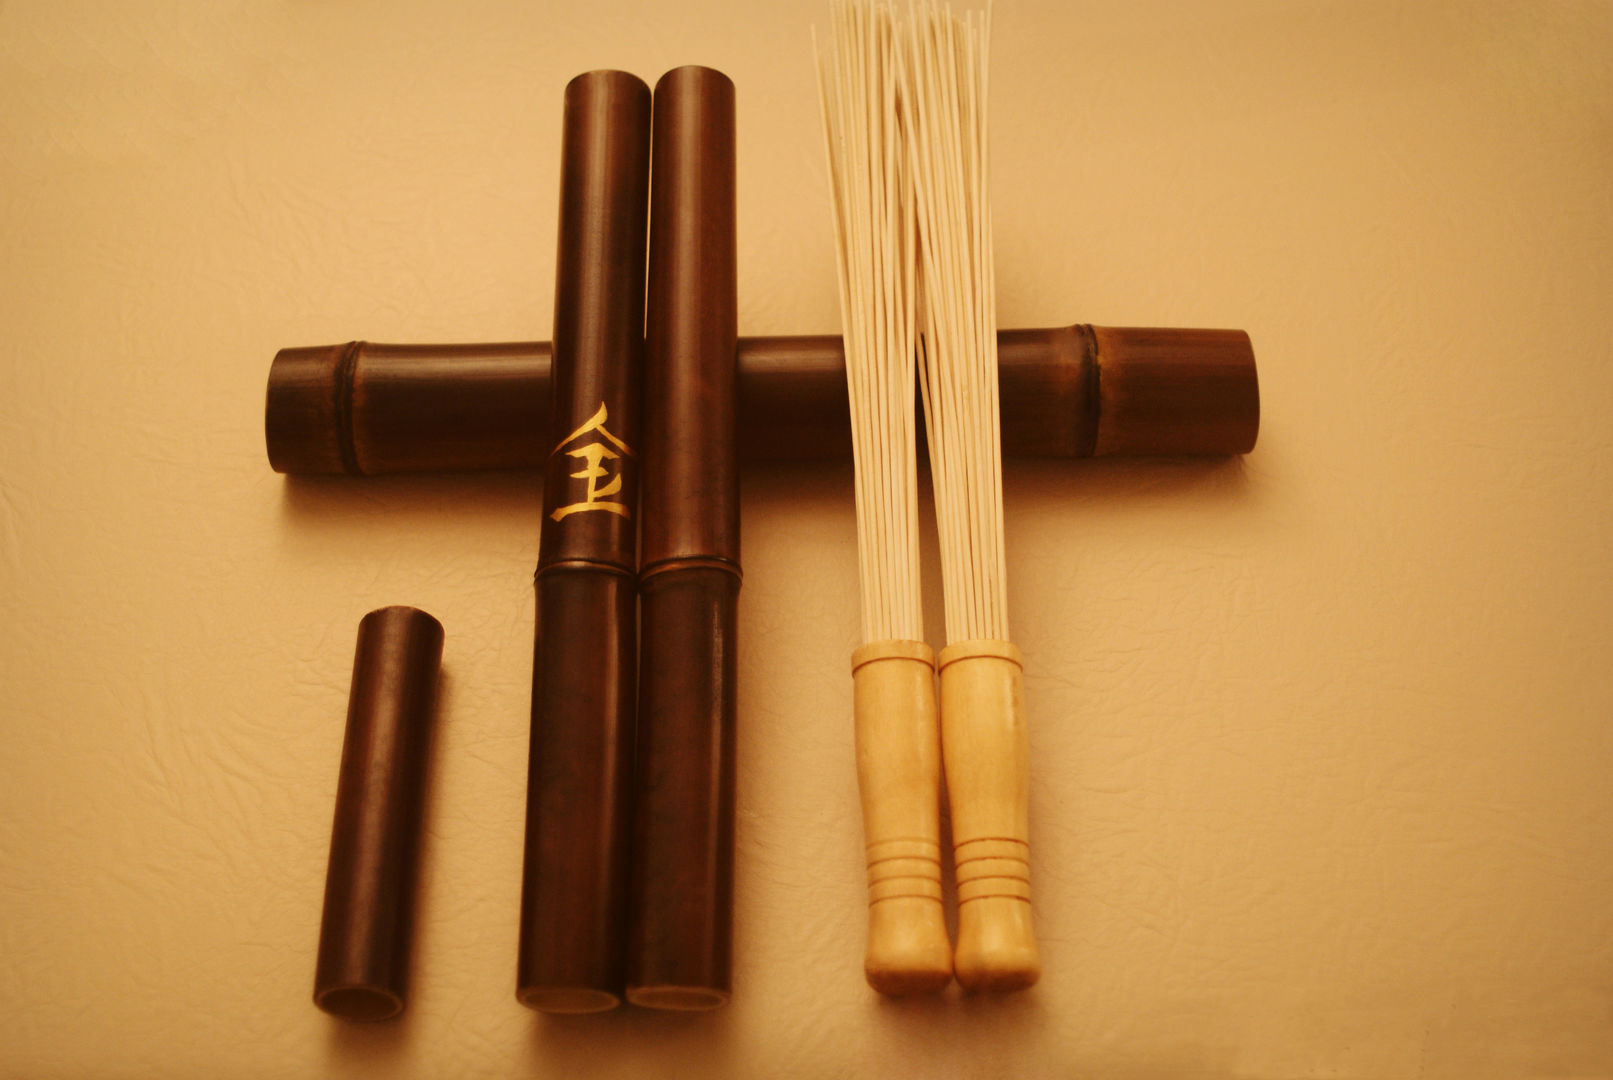 Массажный бамбуковый. Креольский массаж бамбуковыми палочками. Палки для Креольского массажа. Бамбуковые палки 35мм. Фидан бамбуковые палочки.